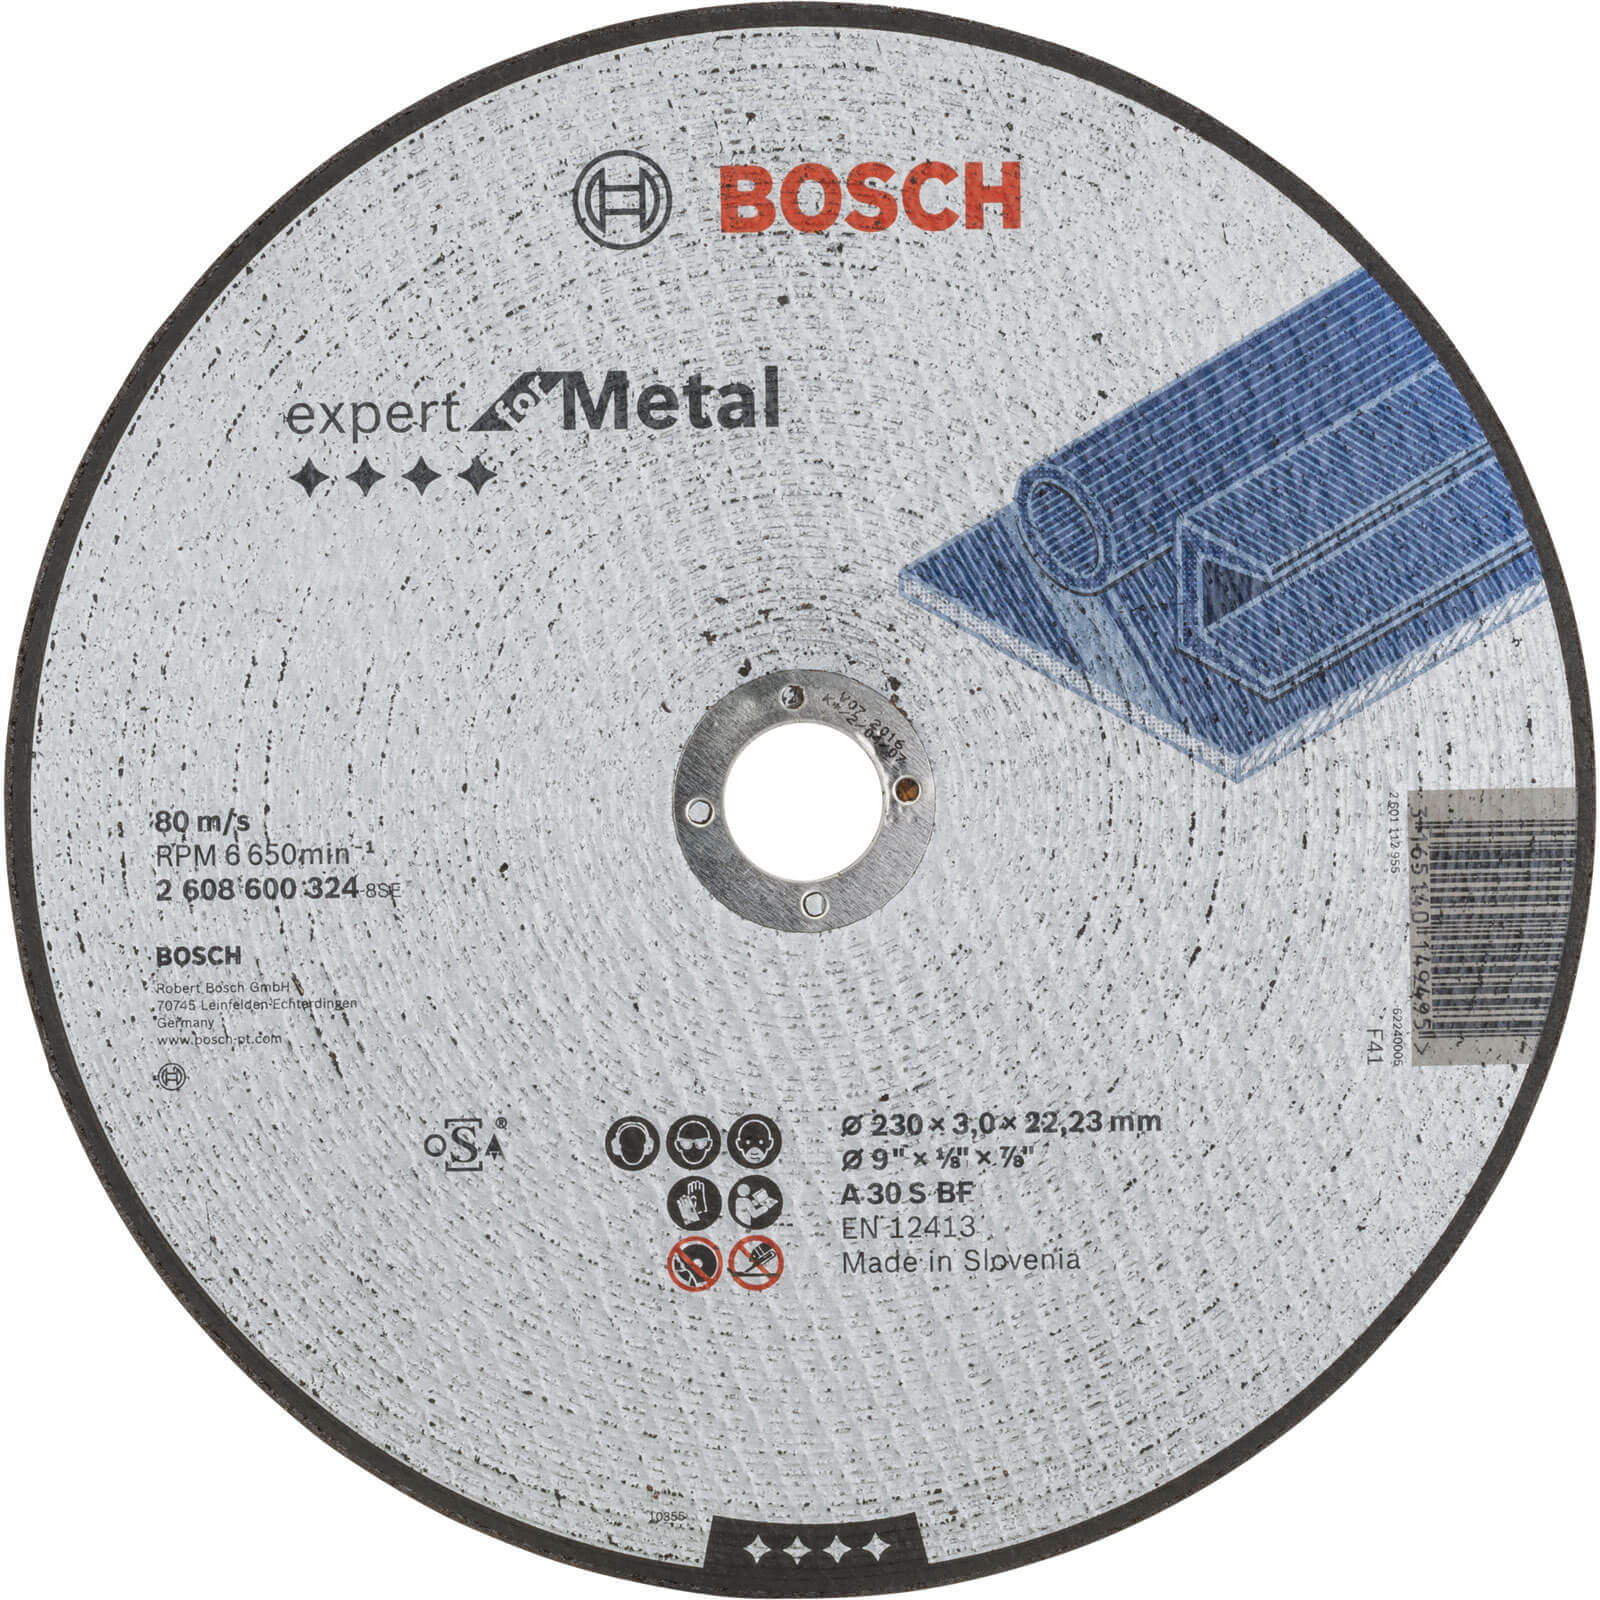 Bosch Expert A30S BF Flat Metal Cutting Disc 230mm